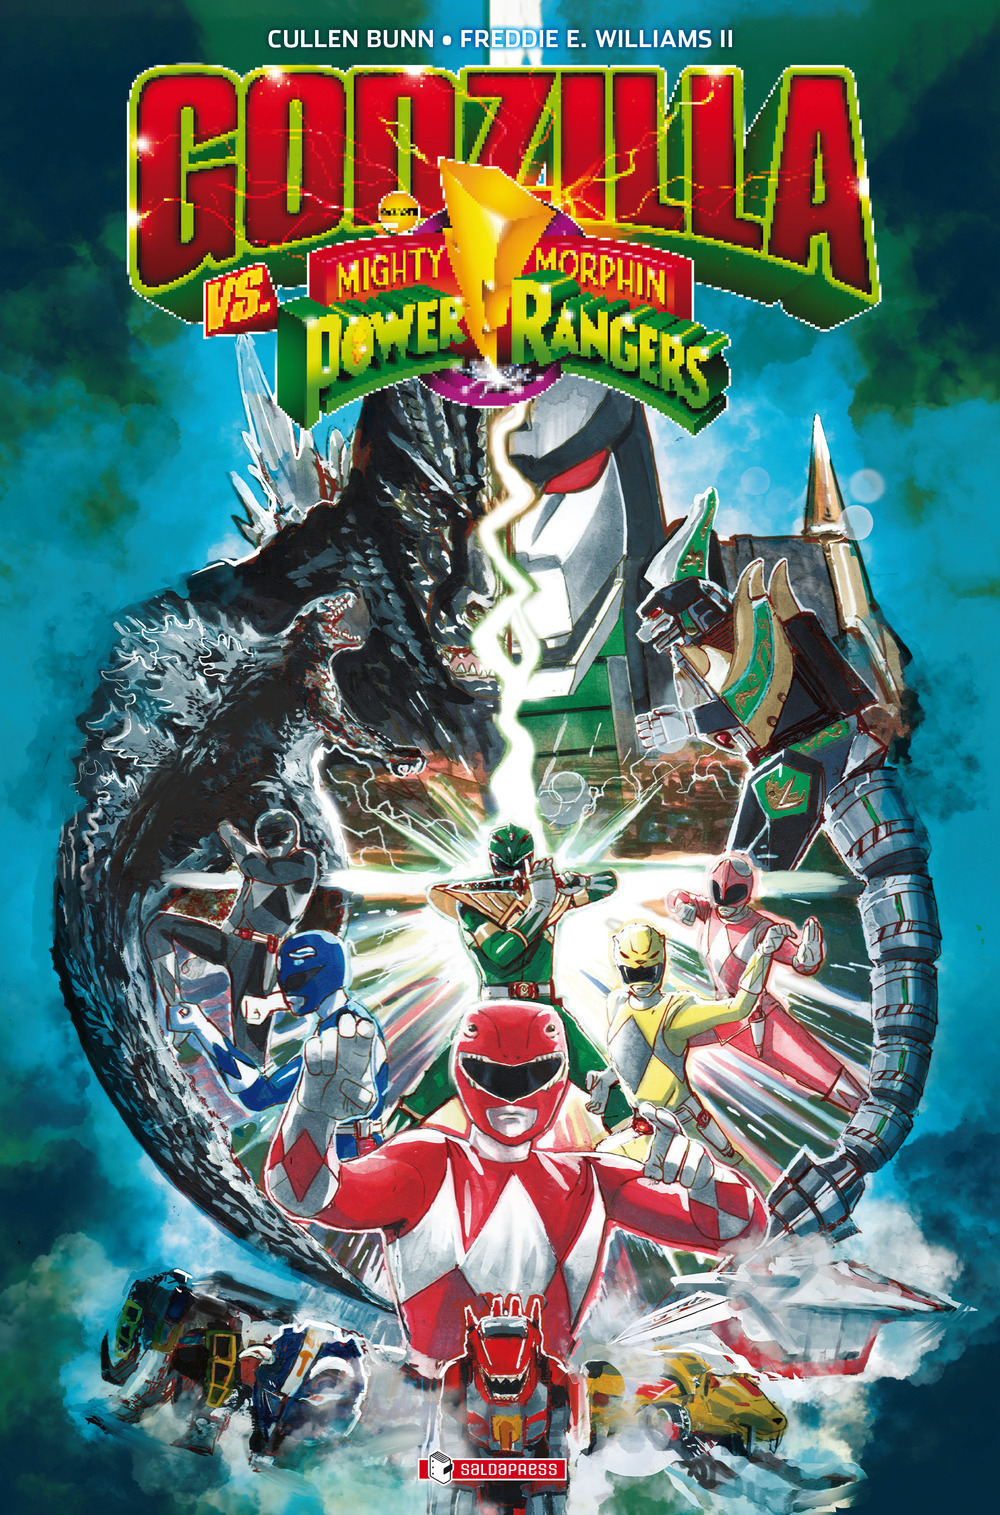 Godzilla vs. The mighty morphin power rangers. Vol. 1